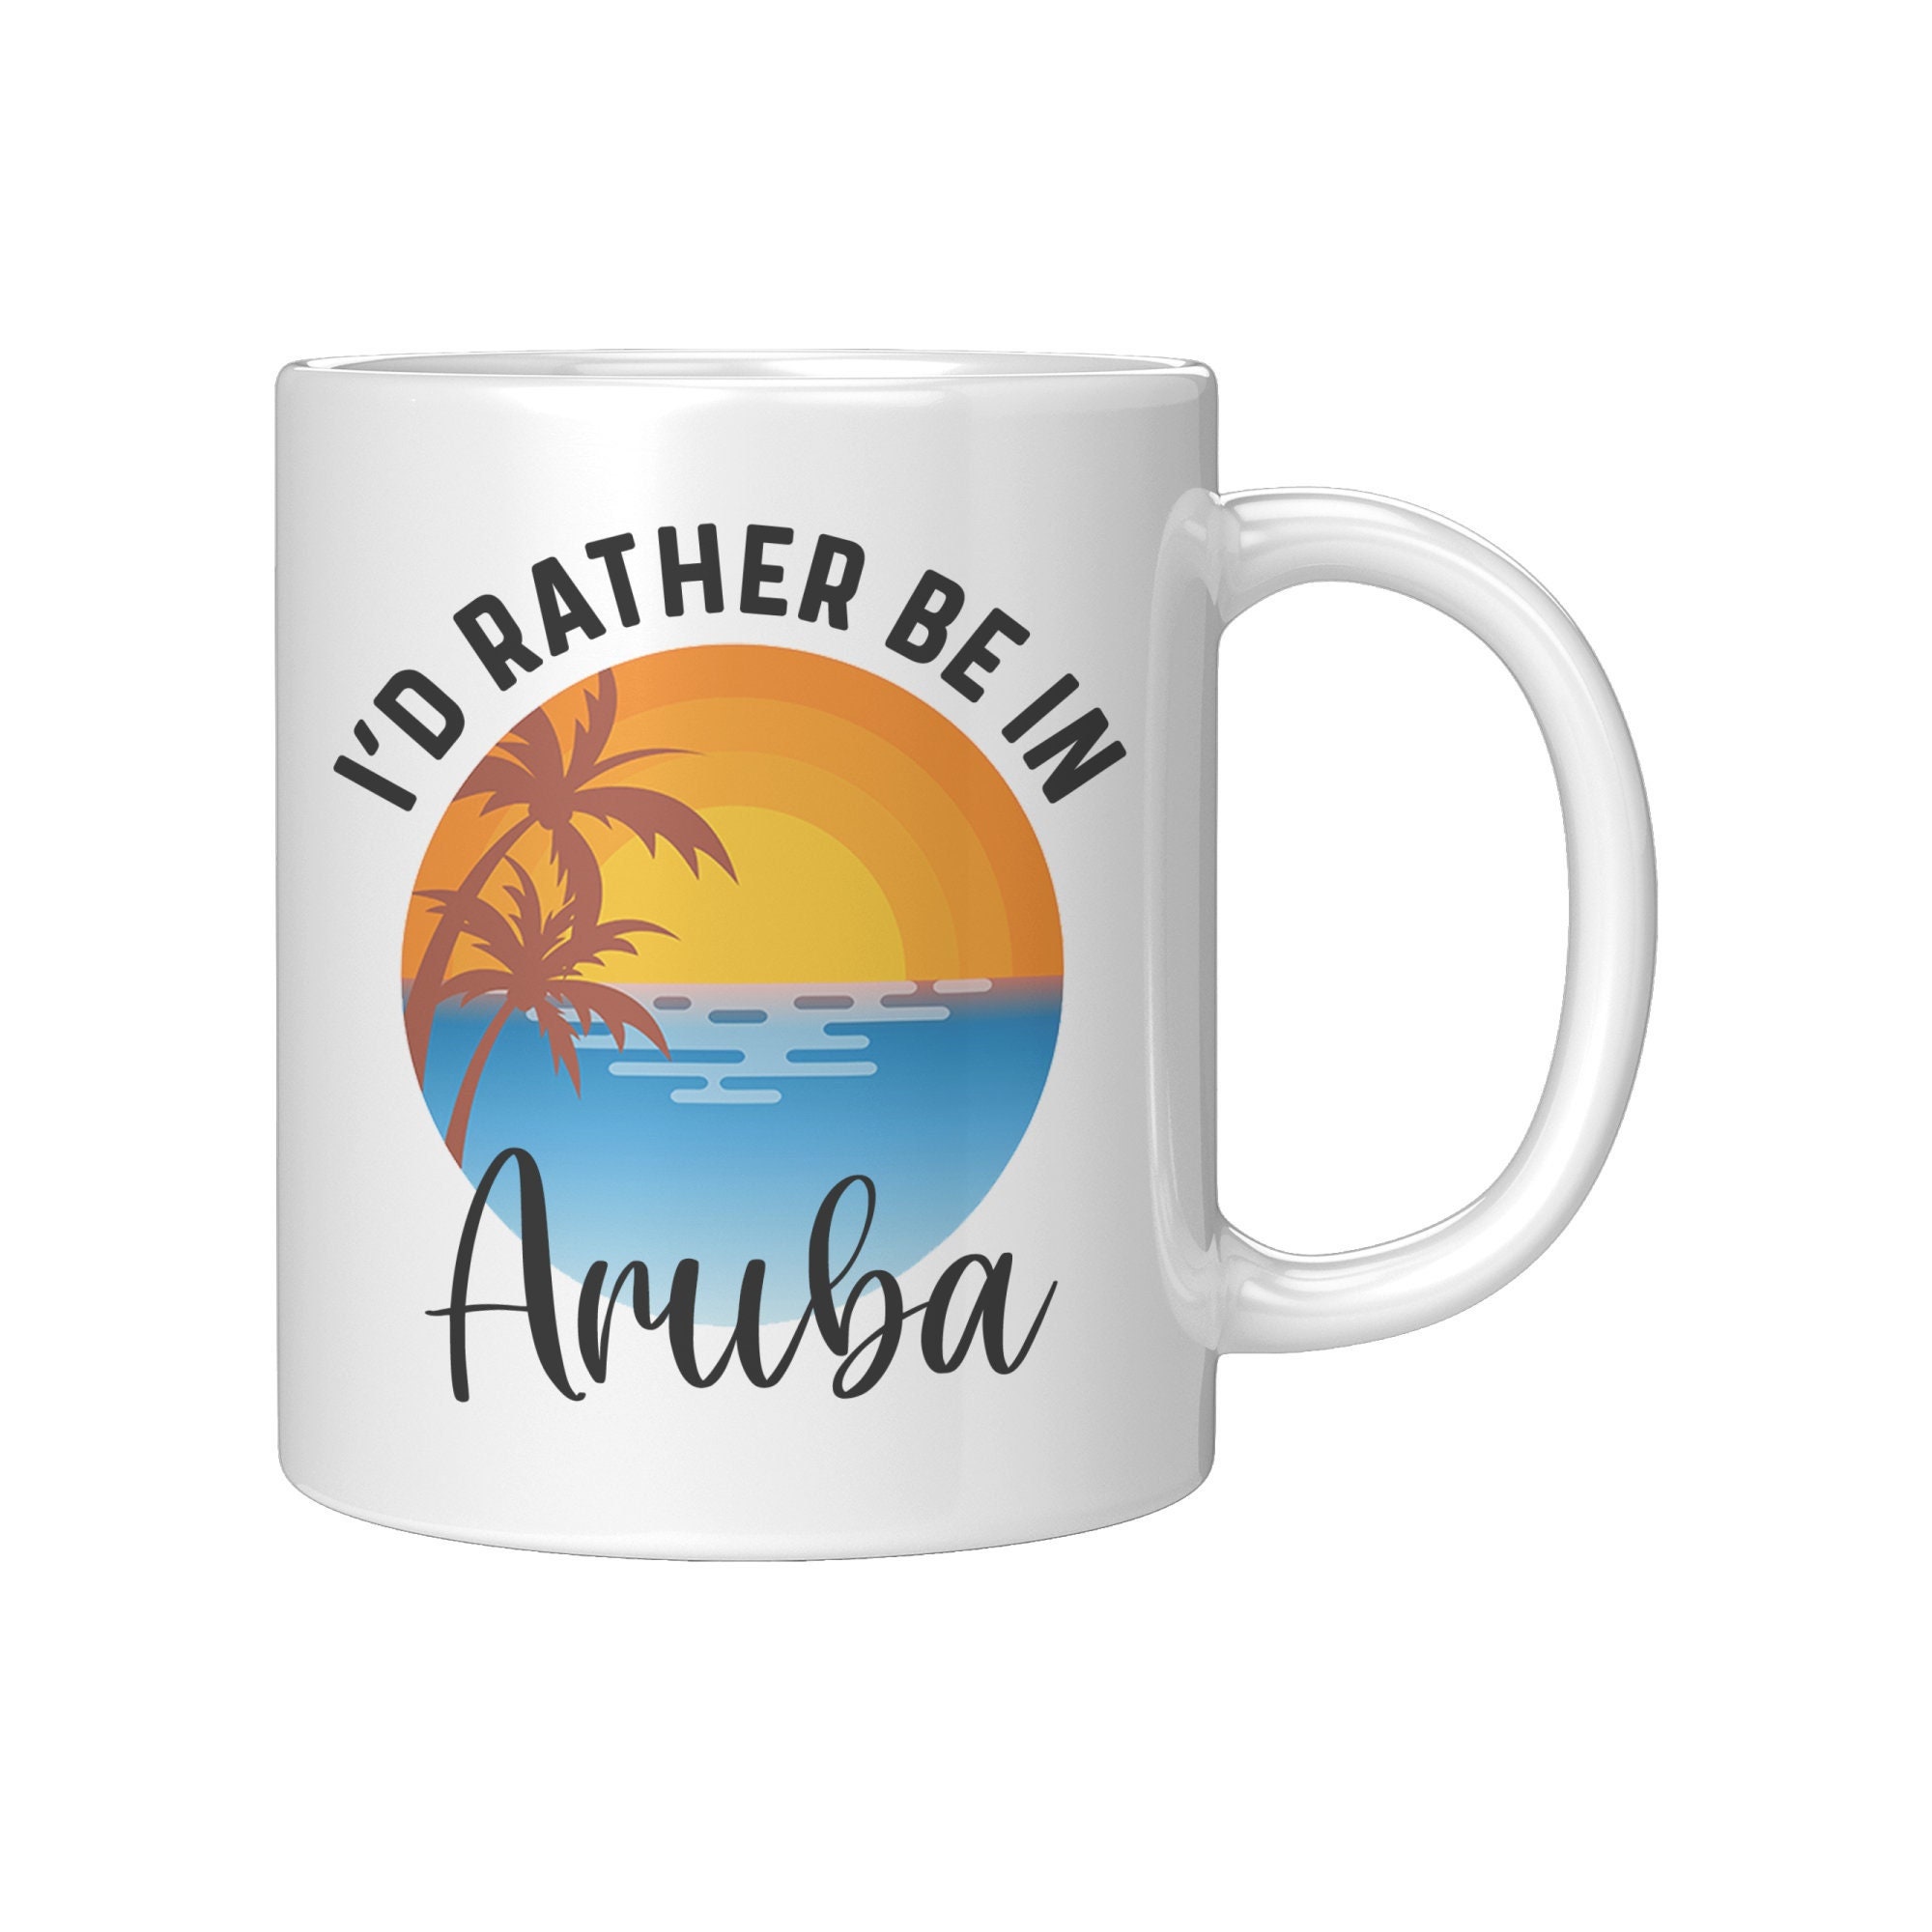 Aruba Souvenir Aruba Coffee Mug Cup Aruba Gift for Men 